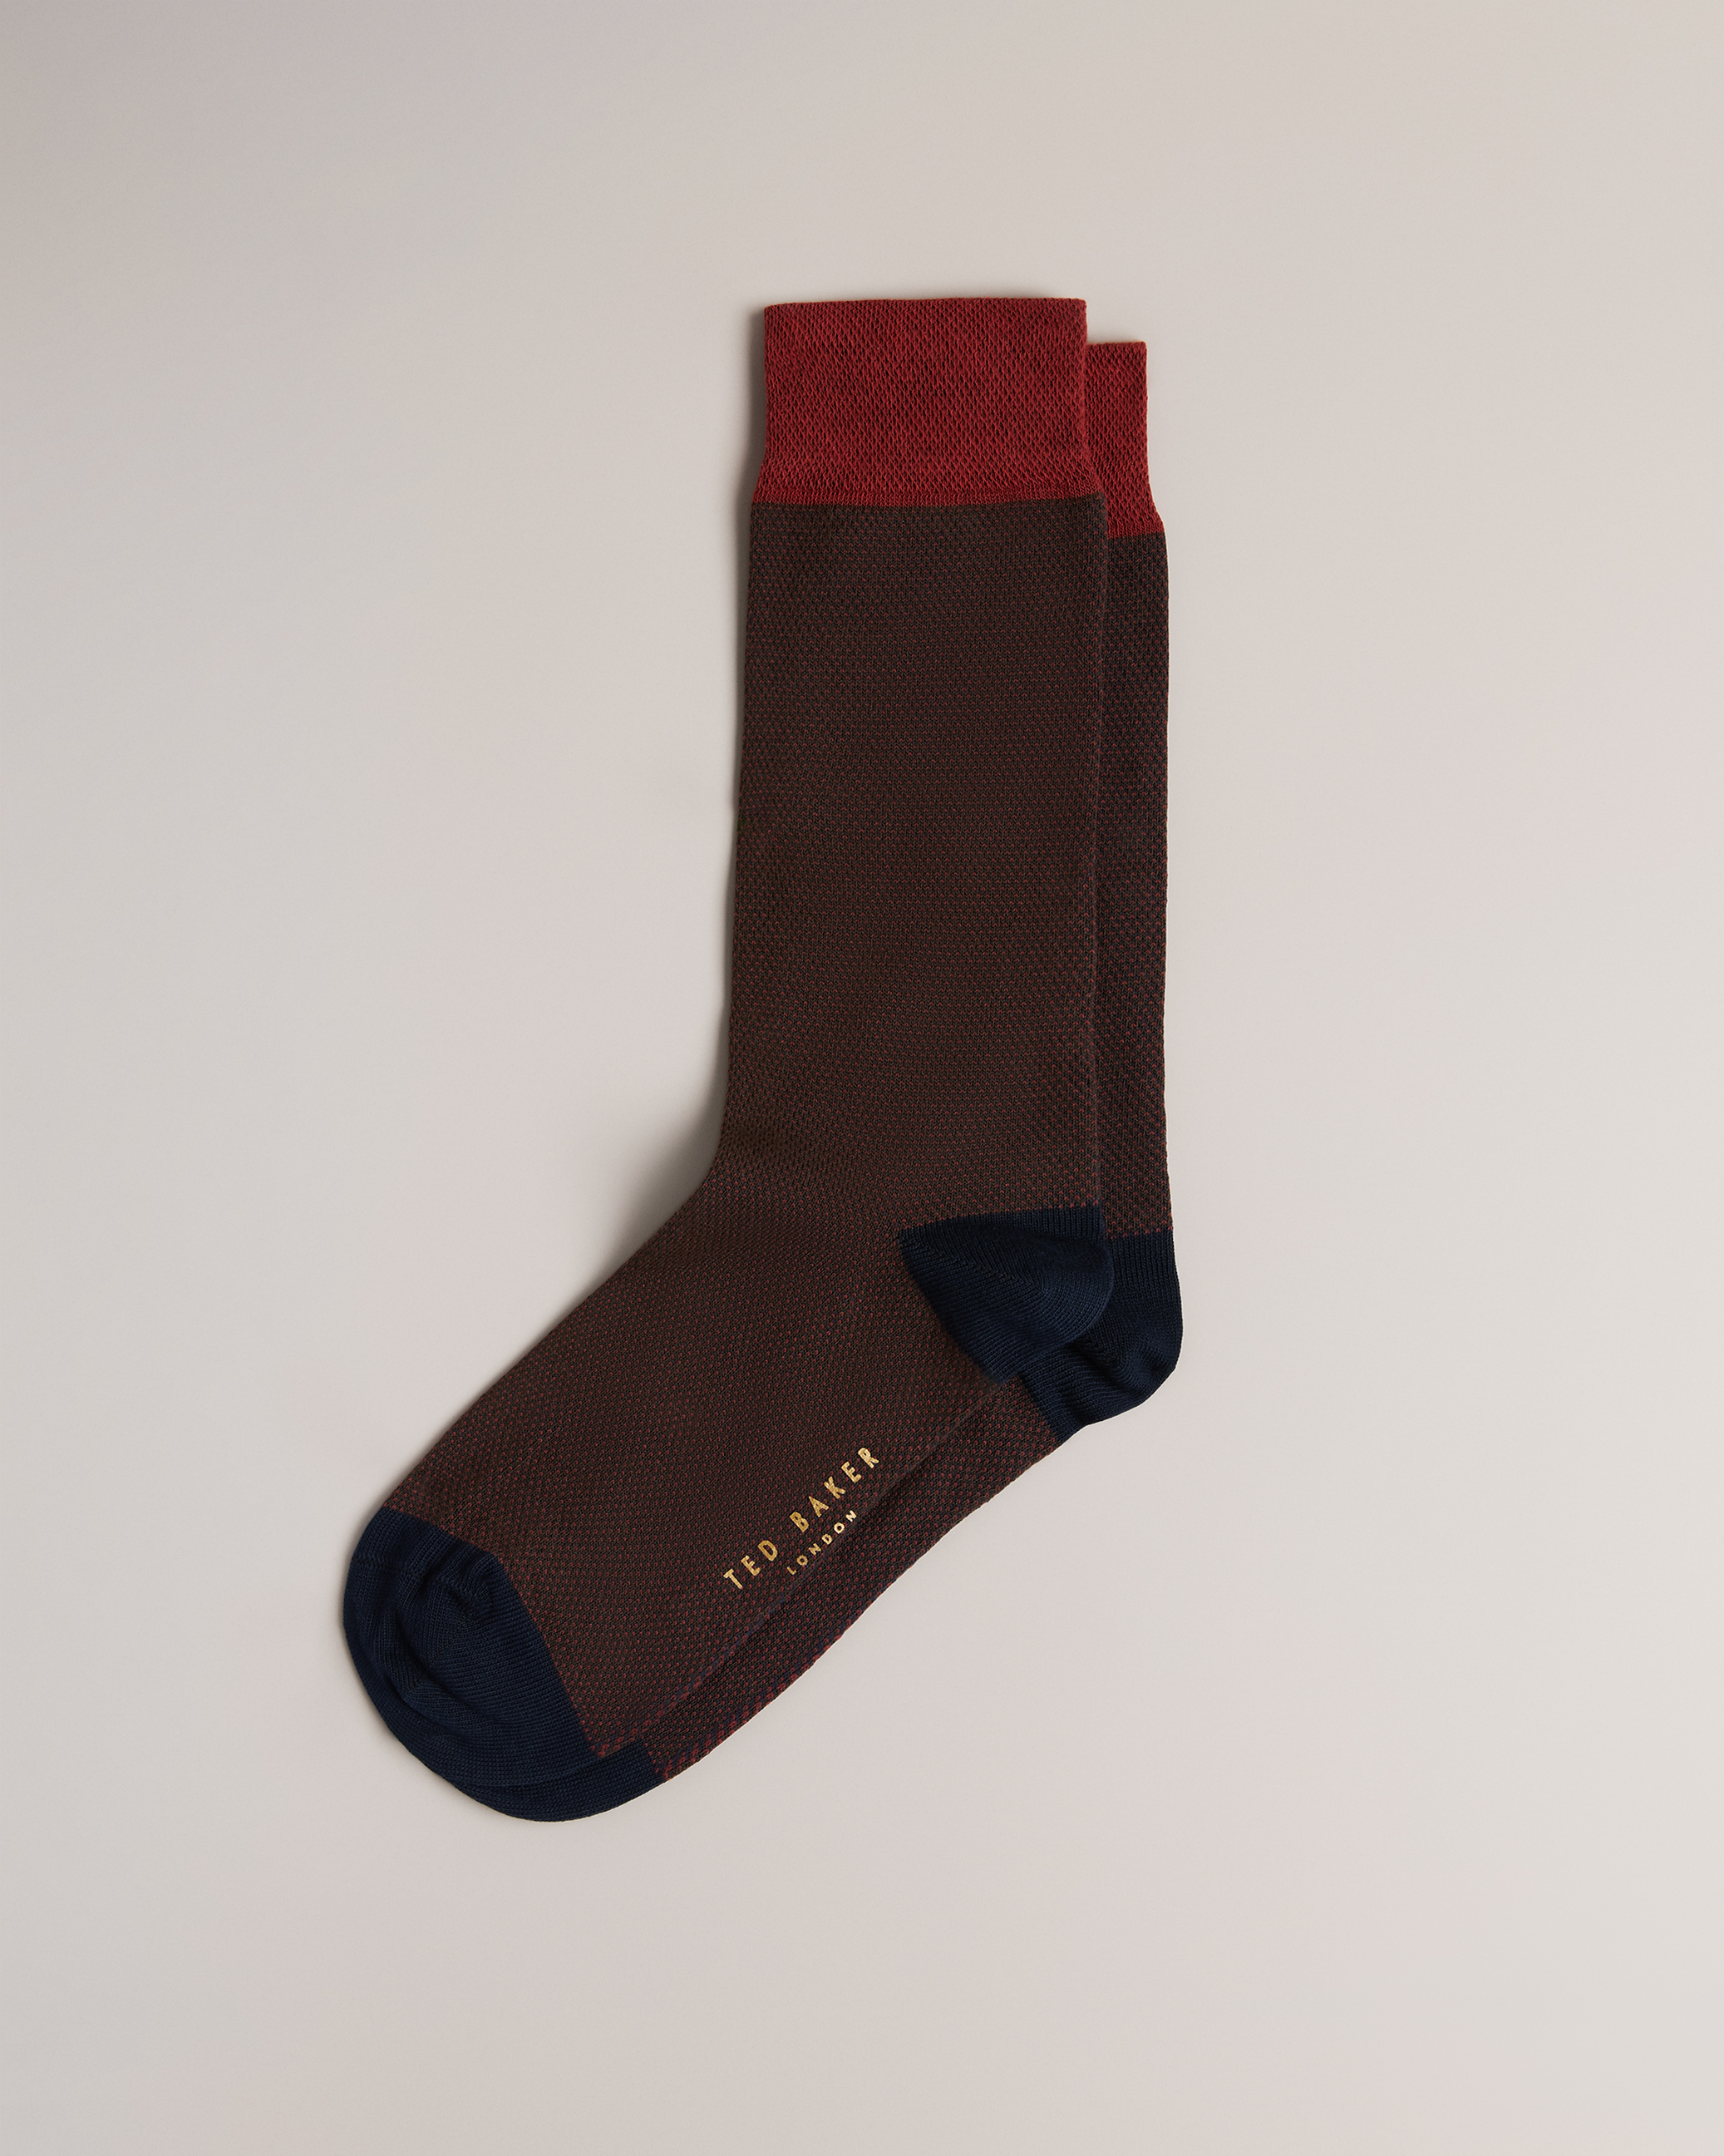 Men's Socks – Ted Baker, Canada